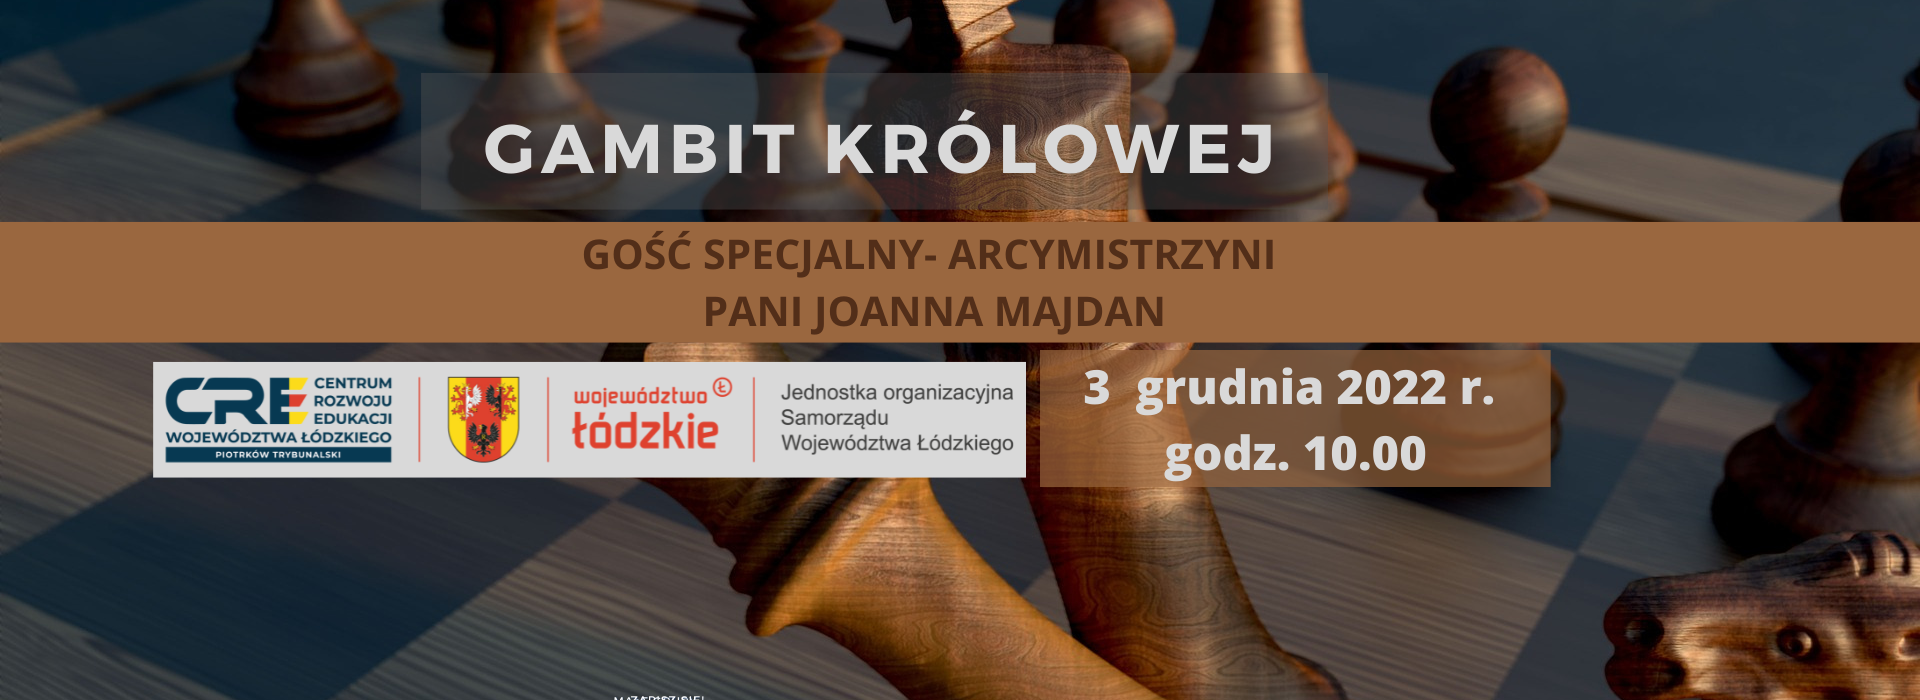 Gambit Królowej  - rozgrywki szachowe - 3.12.2022